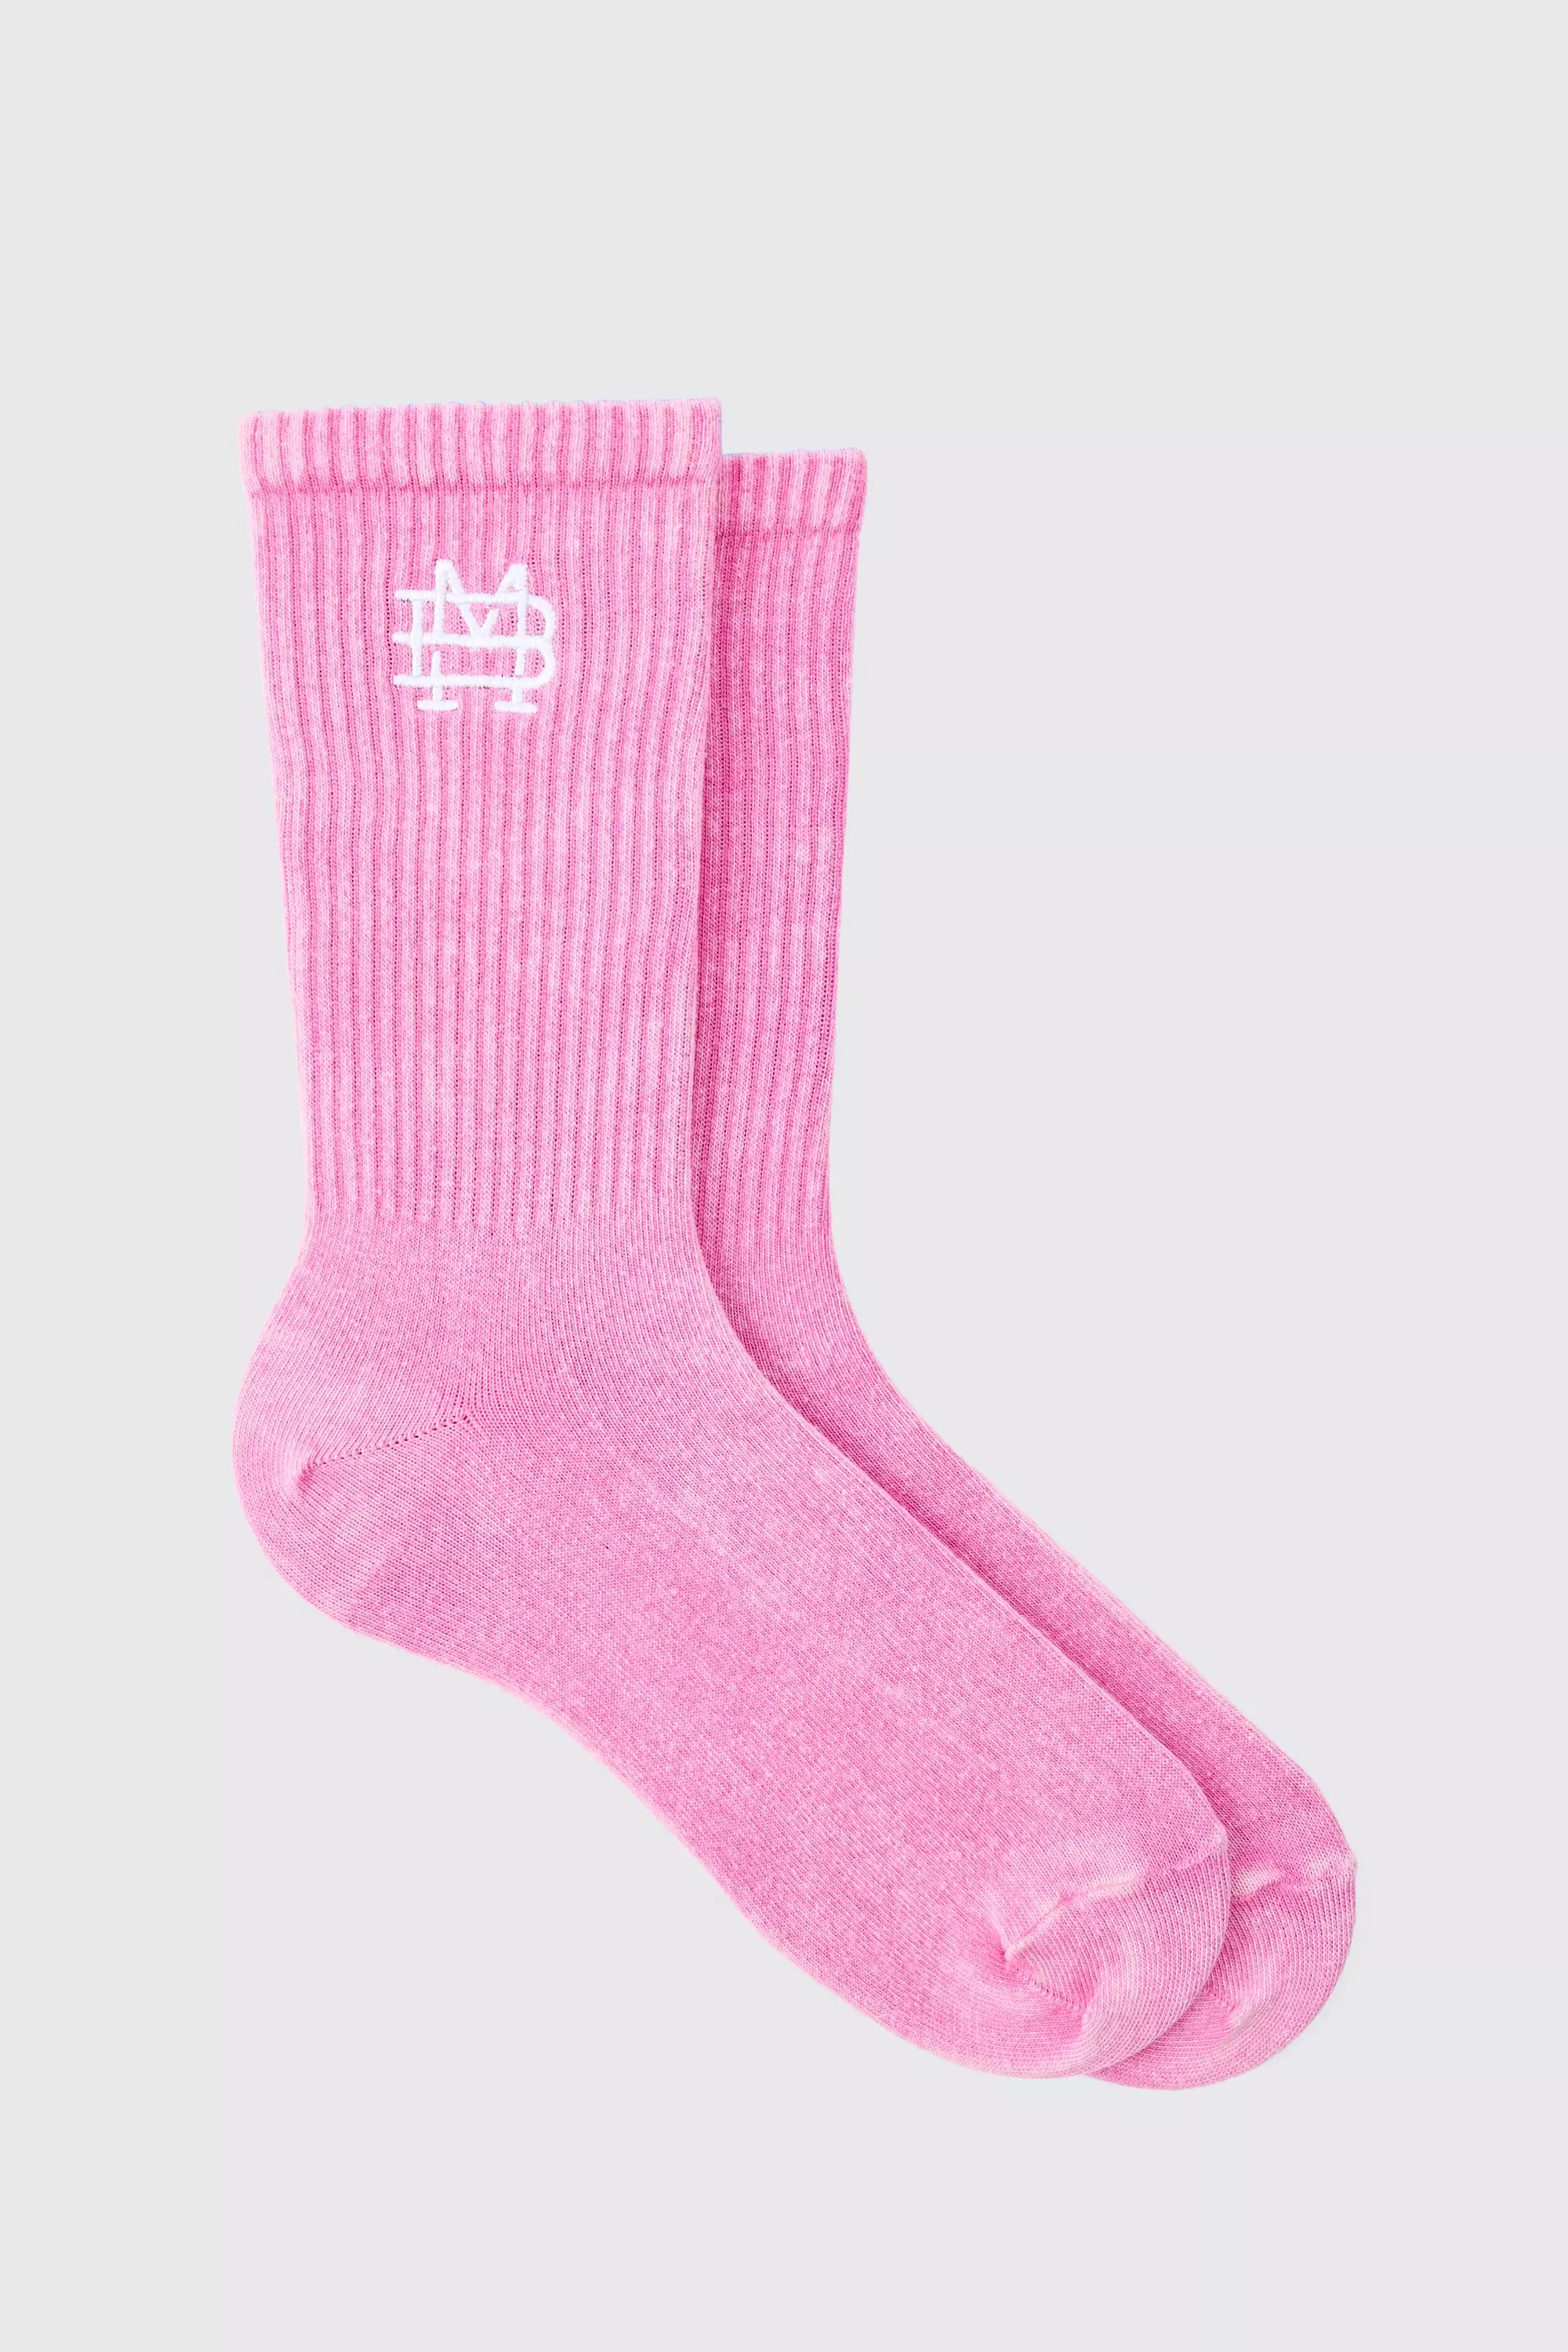 Acid Wash Bm Embroidered Socks In Pink Pink